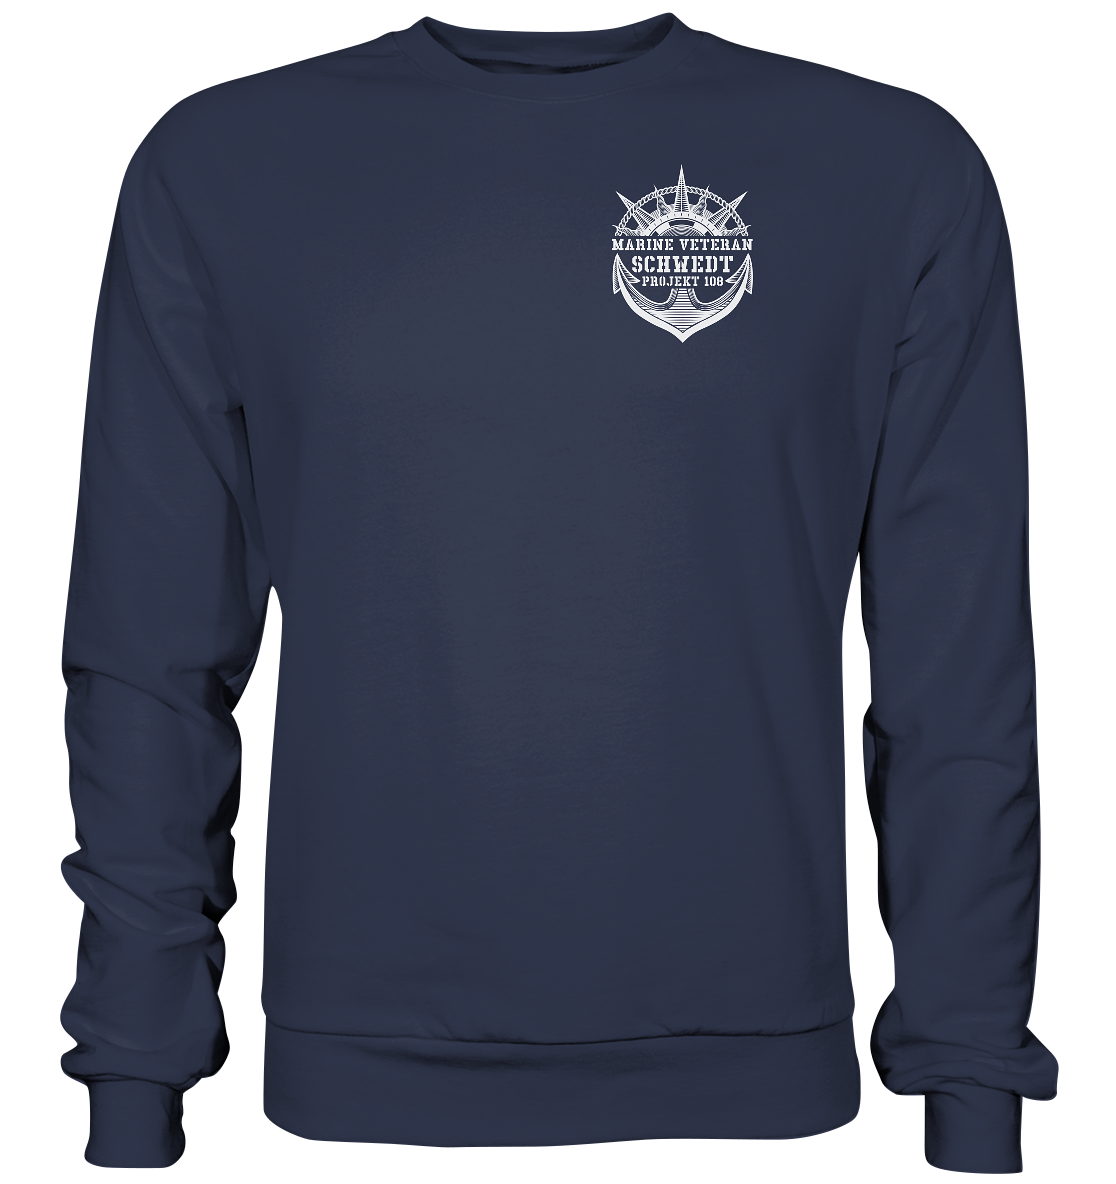 Projekt 108 SCHWEDT Marine Veteran Brustlogo - Premium Sweatshirt